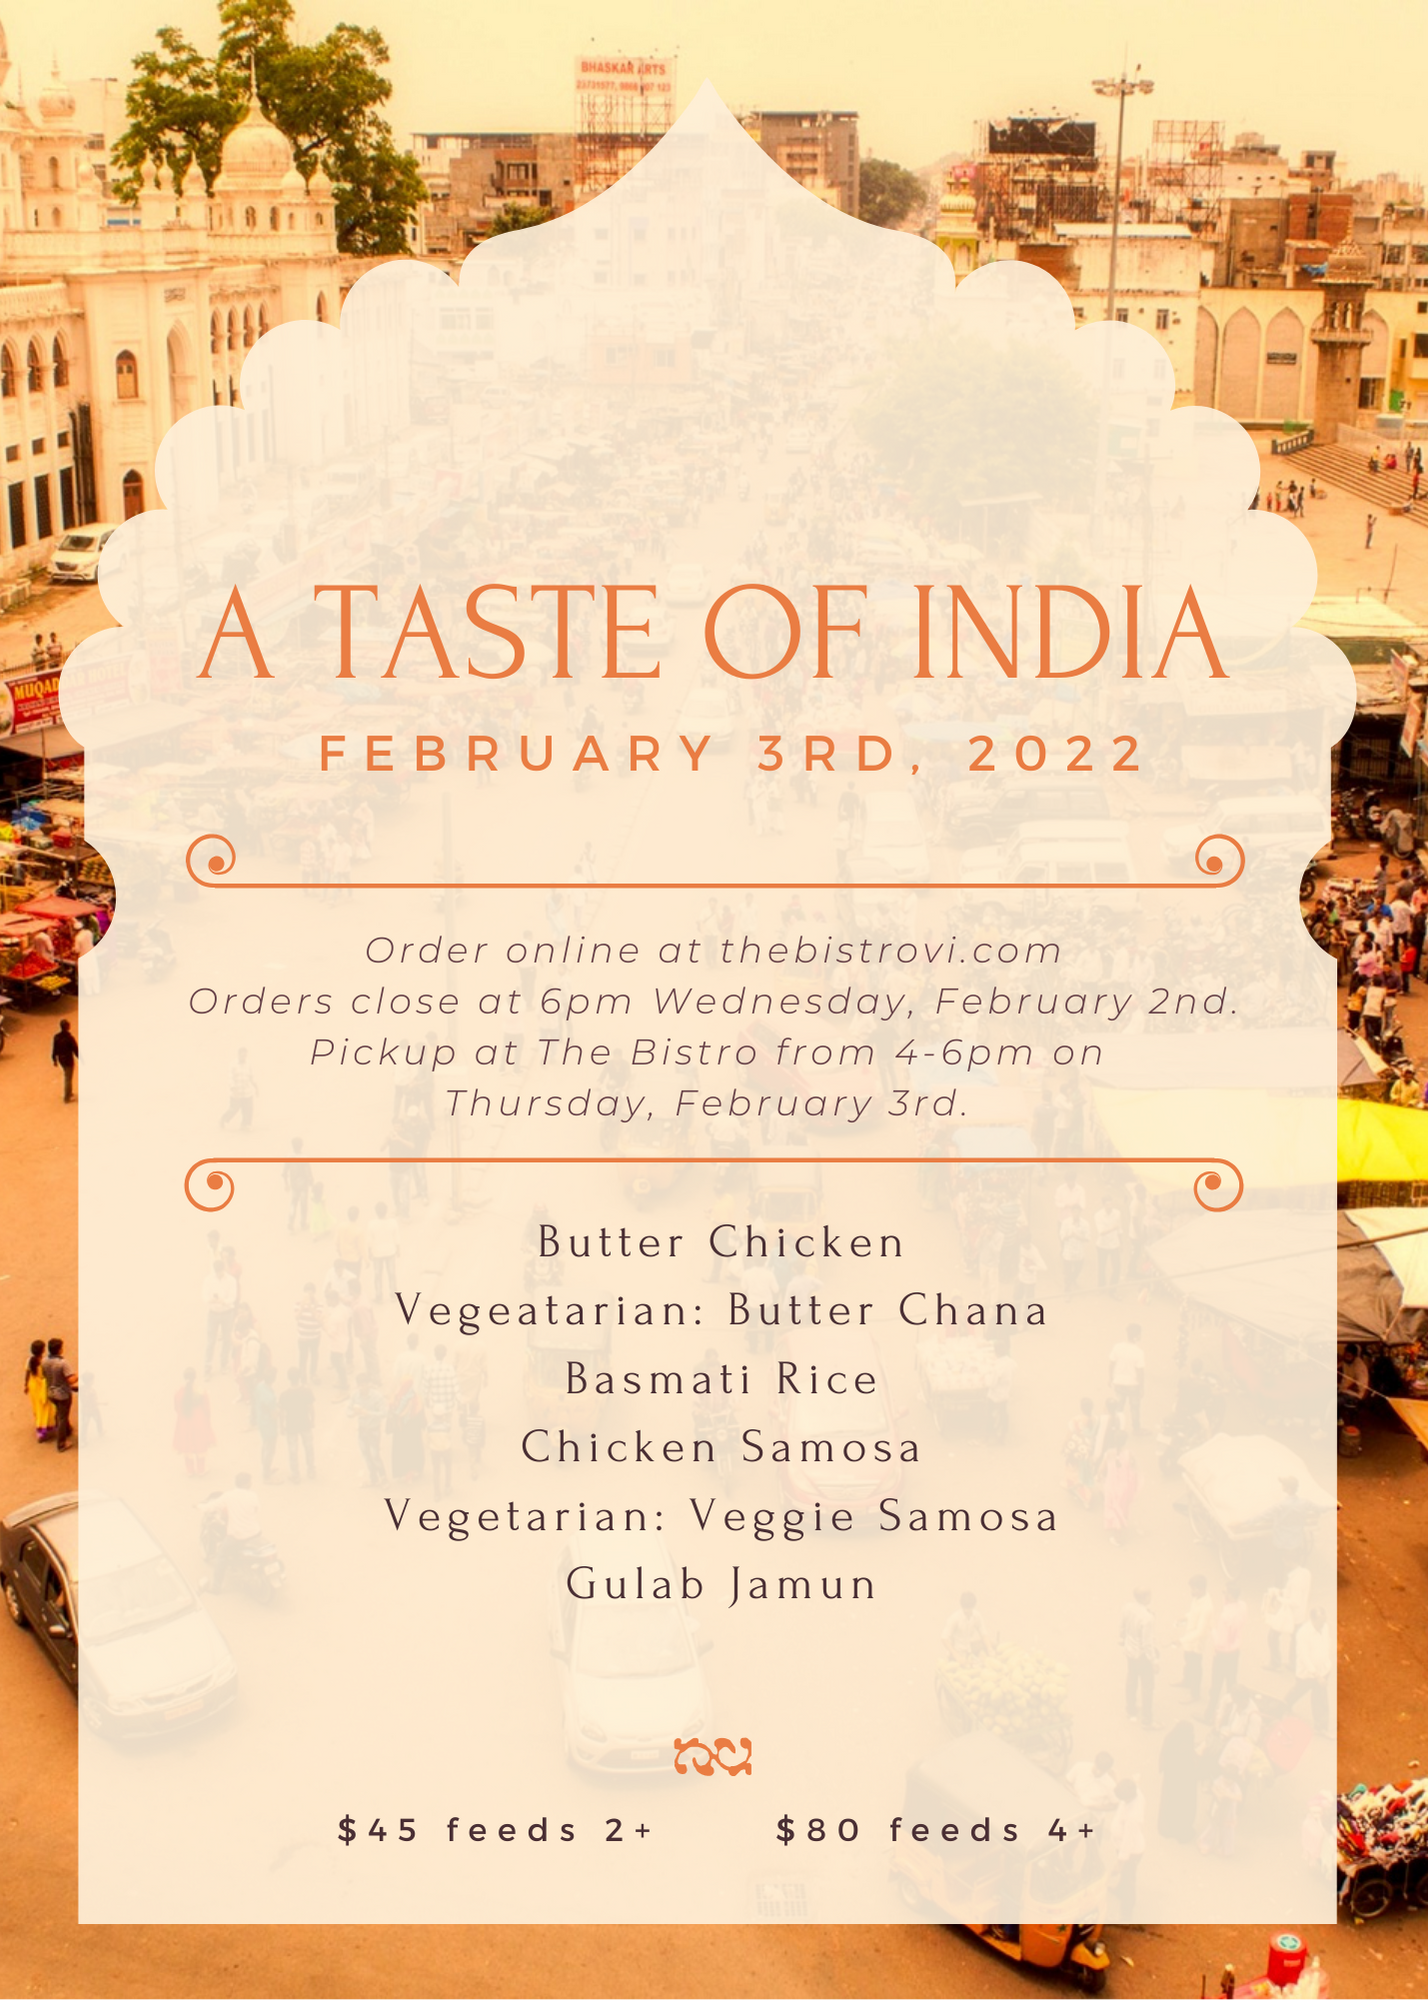 Taste of India - February 3rd, 2022